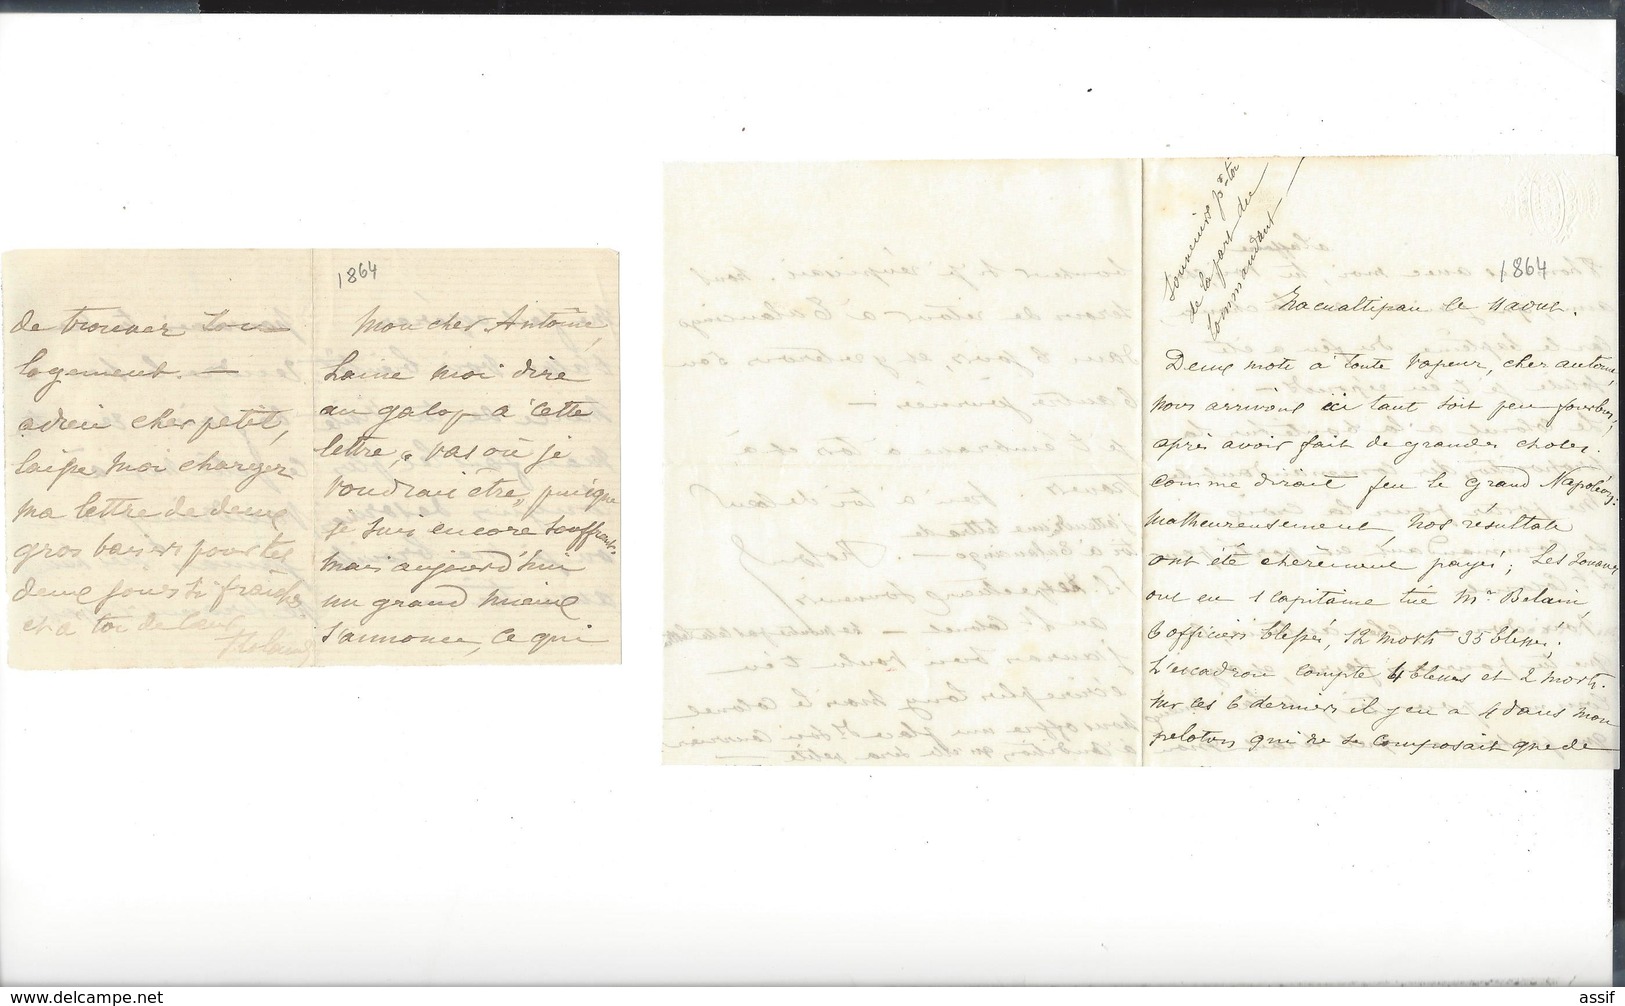 MEXIQUE MEXICO Dossier  Roland du Luart 5 è Hussards  Autographe 1864 + 2 lettres récit combat Etla 20 p.( 3 è Zouaves )